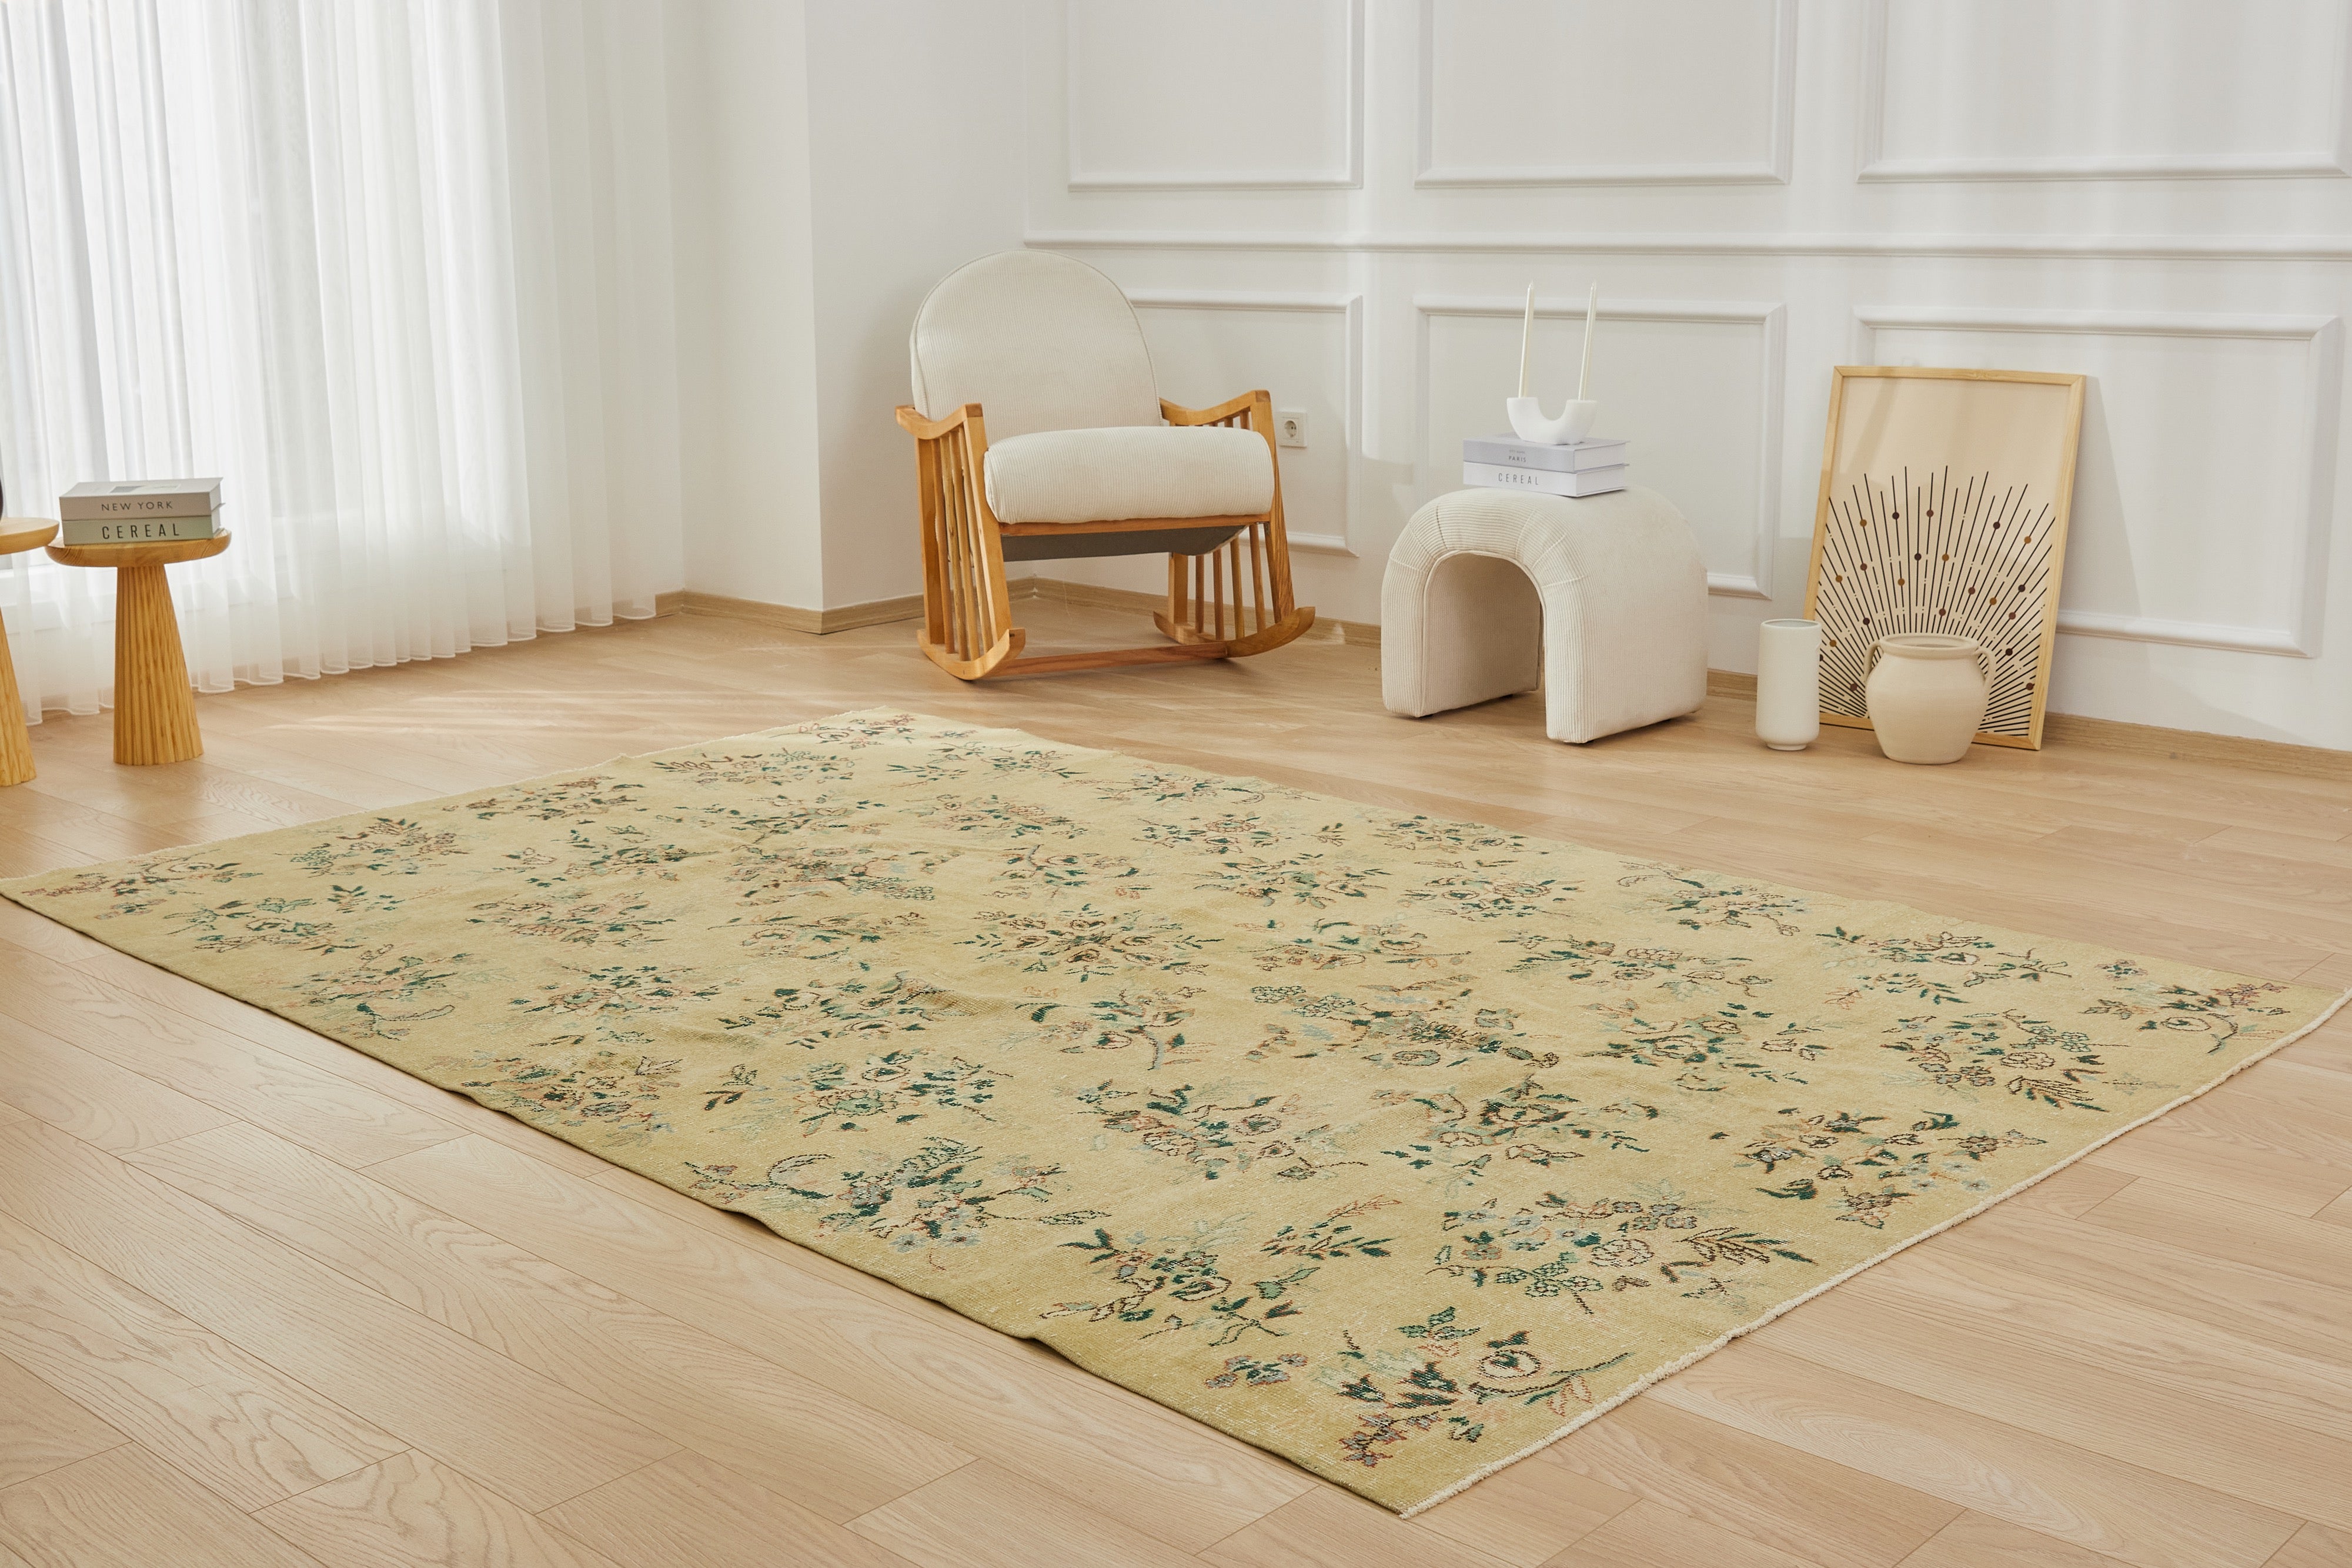 Antique washed Elegance - Milan's Professional Carpet Design